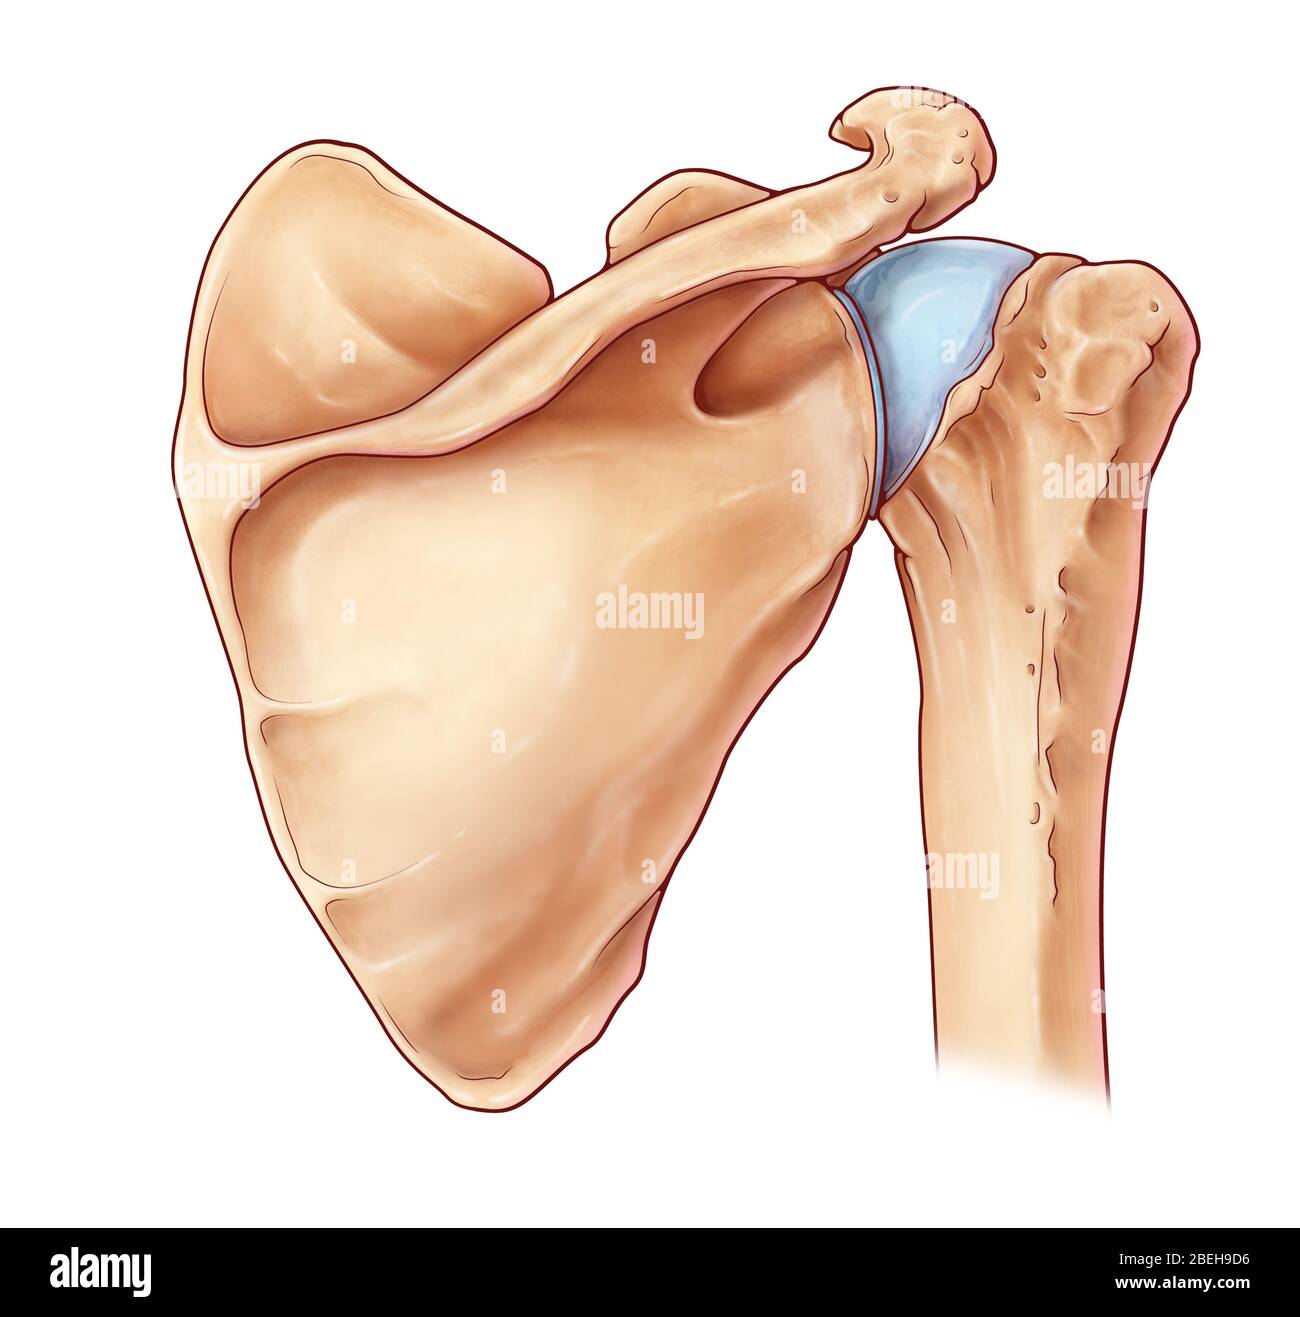 Shoulder Joint, illustration Stock Photo